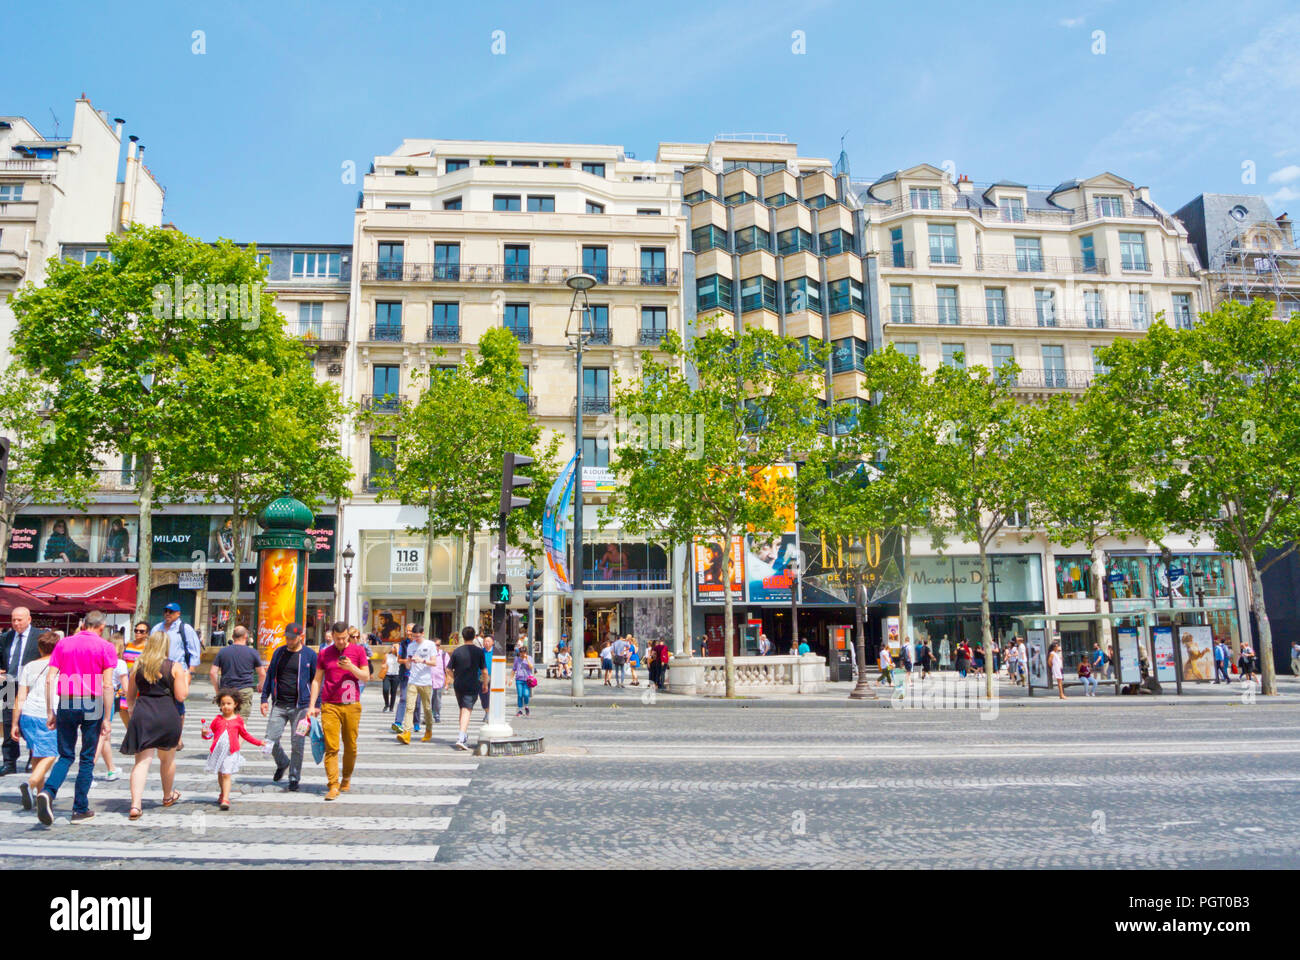 Pedestrians crossing Avenue des Champs-Élysées, 8th district, Paris, France Stock Photo